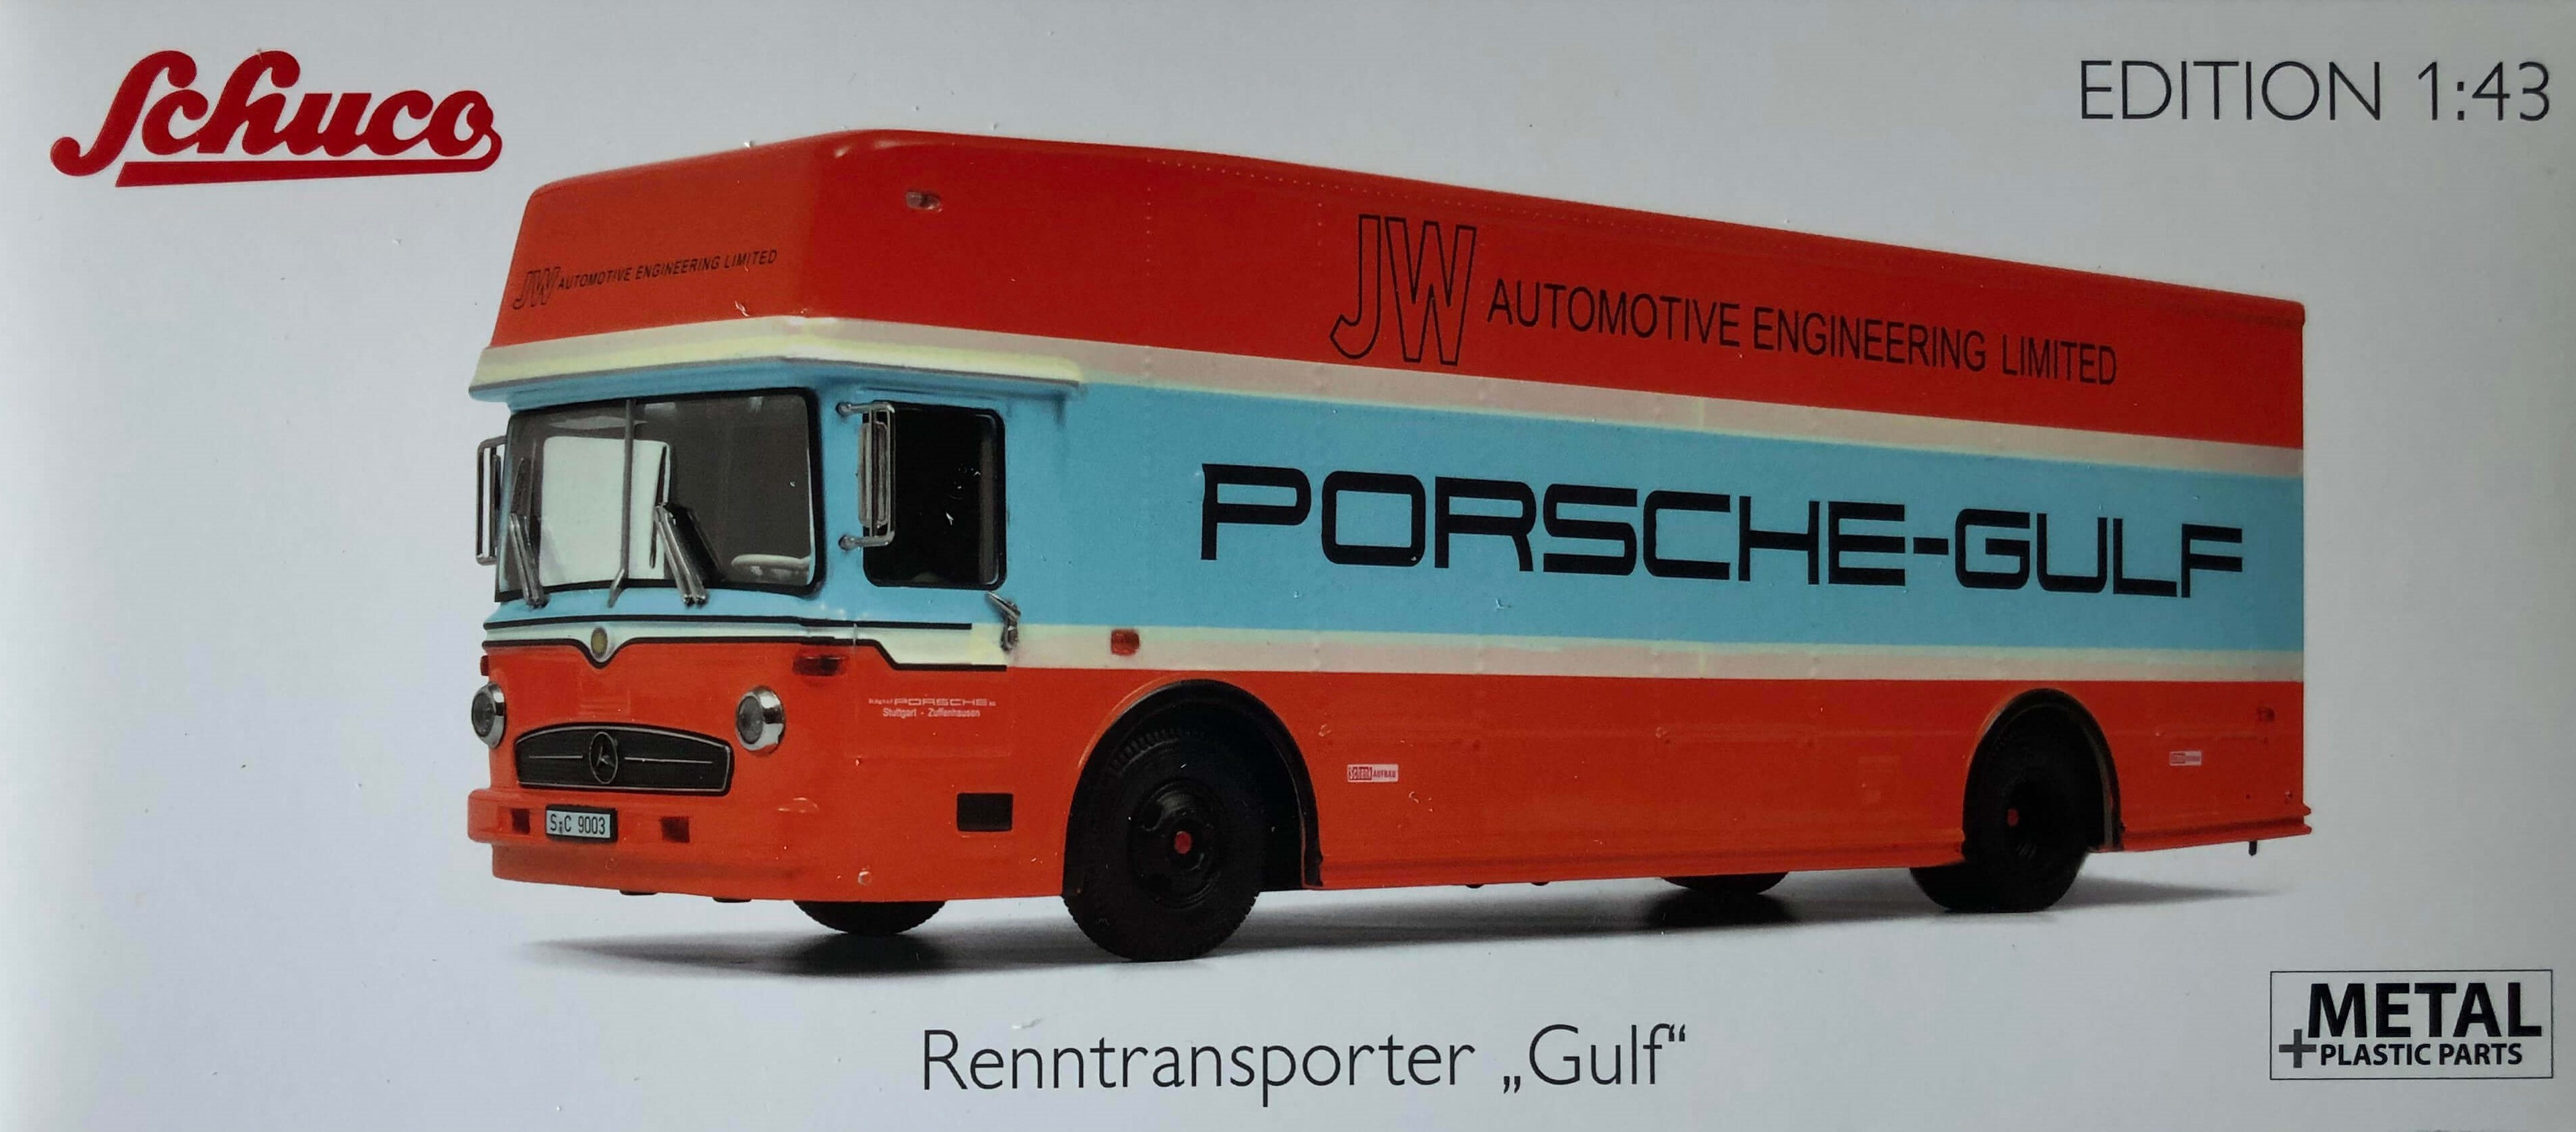 Porsche Transporter Gulf